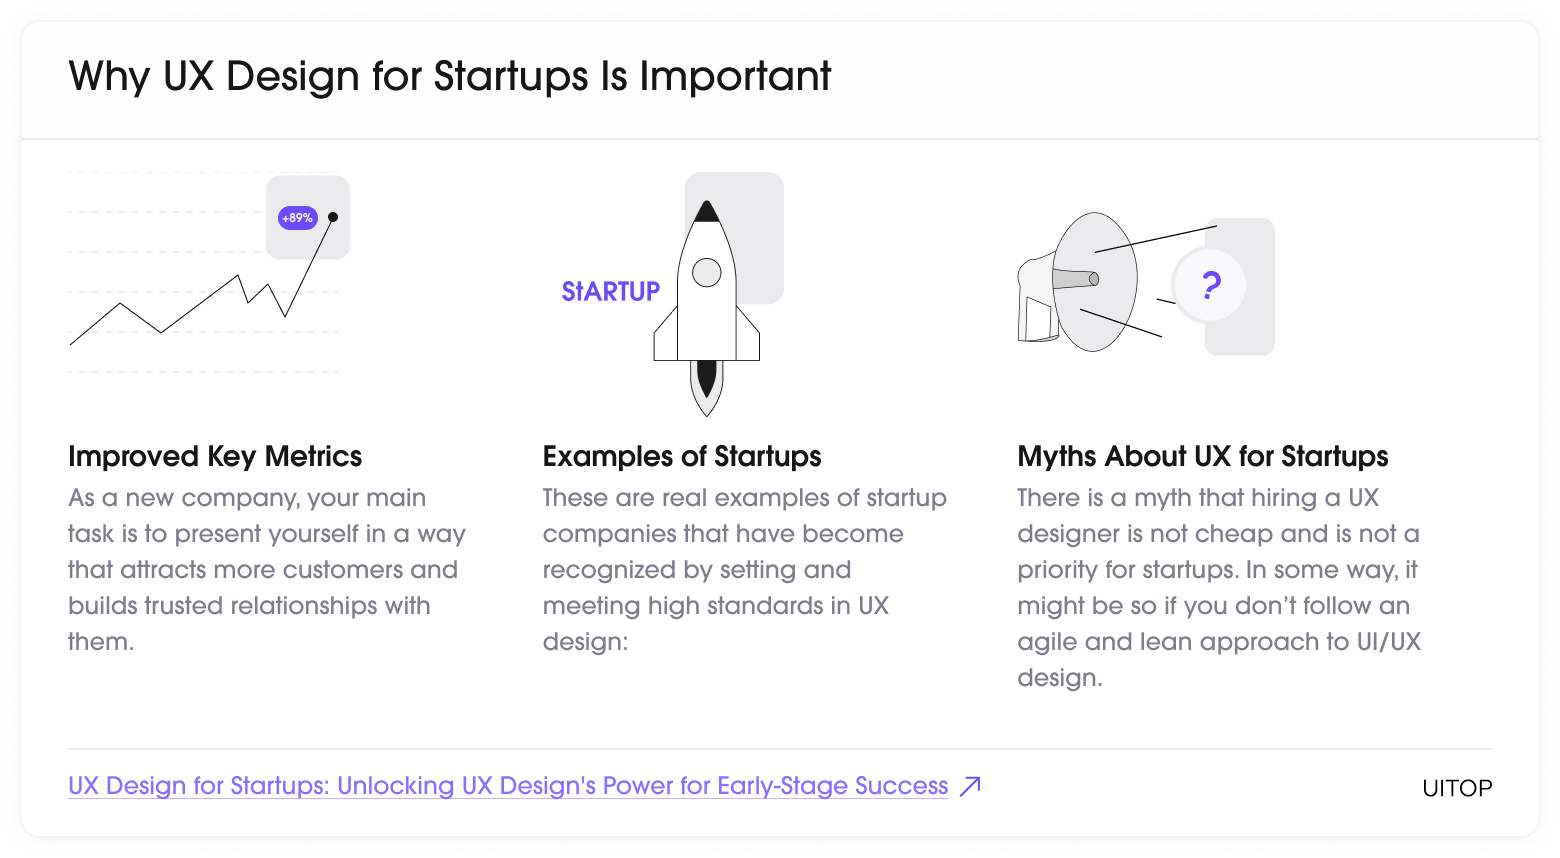 UX design for startups